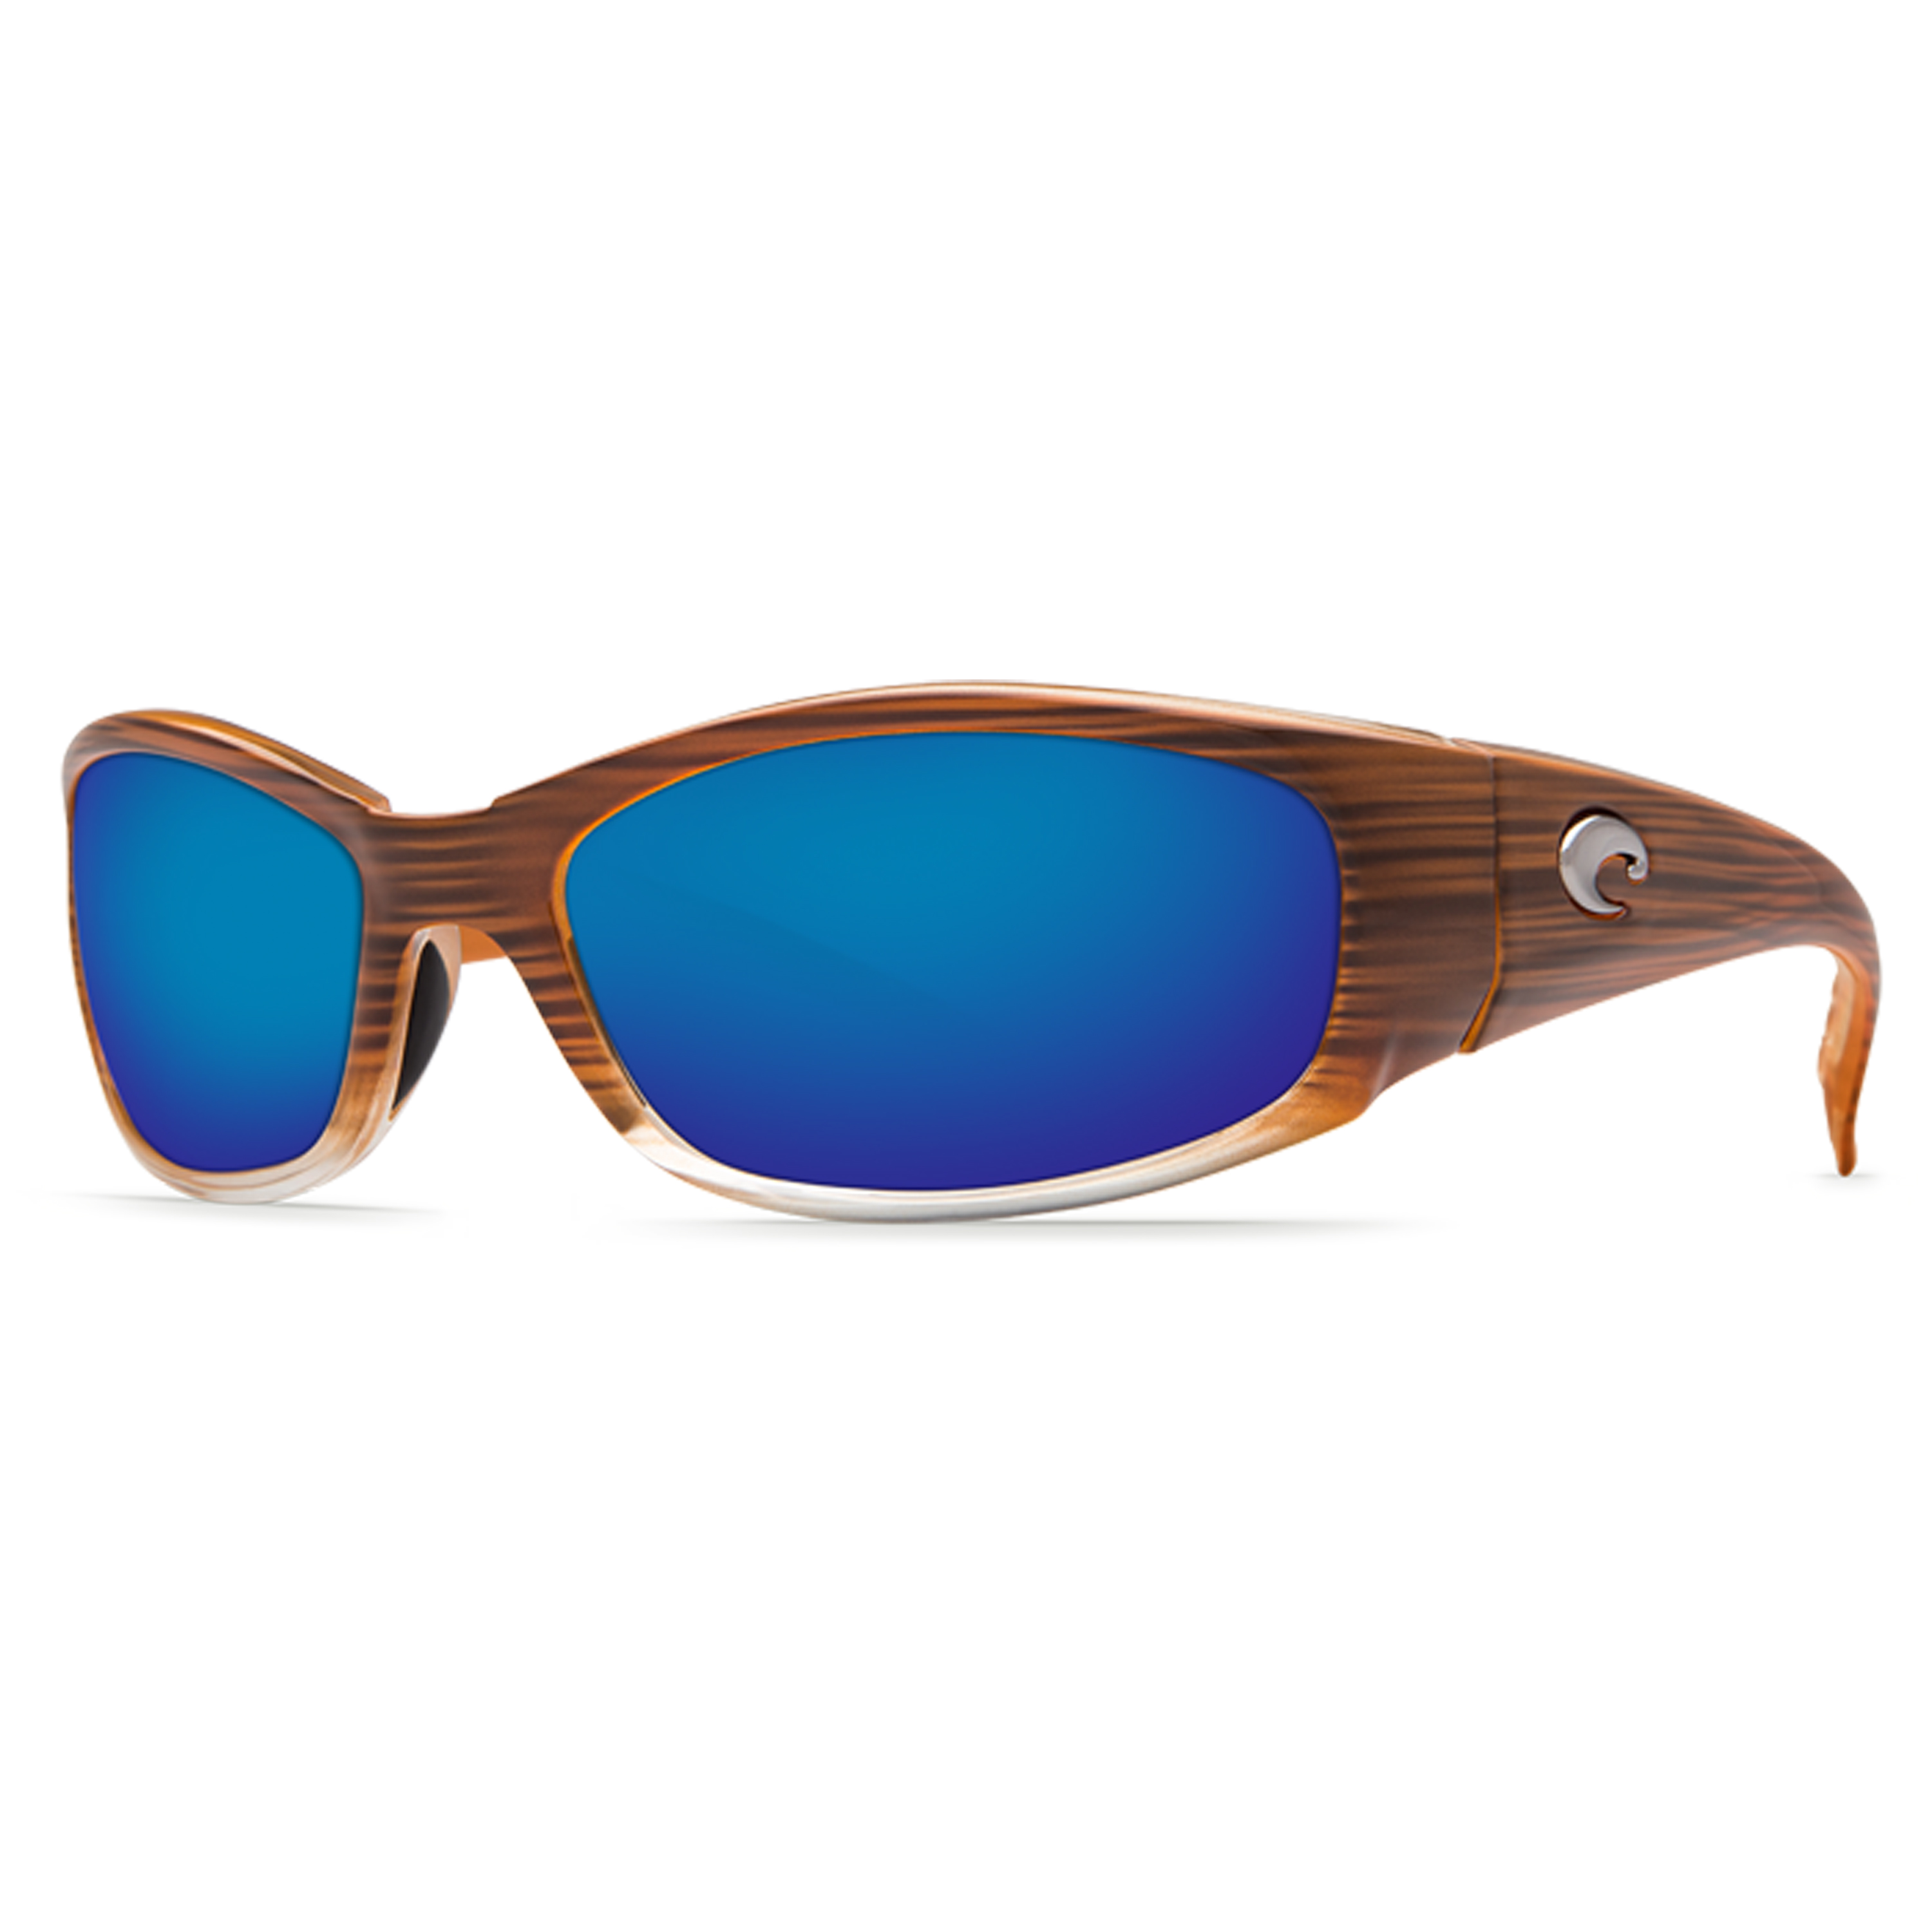 New Costa del Mar Caballito Polarized Sunglasses Black/Blue Mirror 400G Fishing